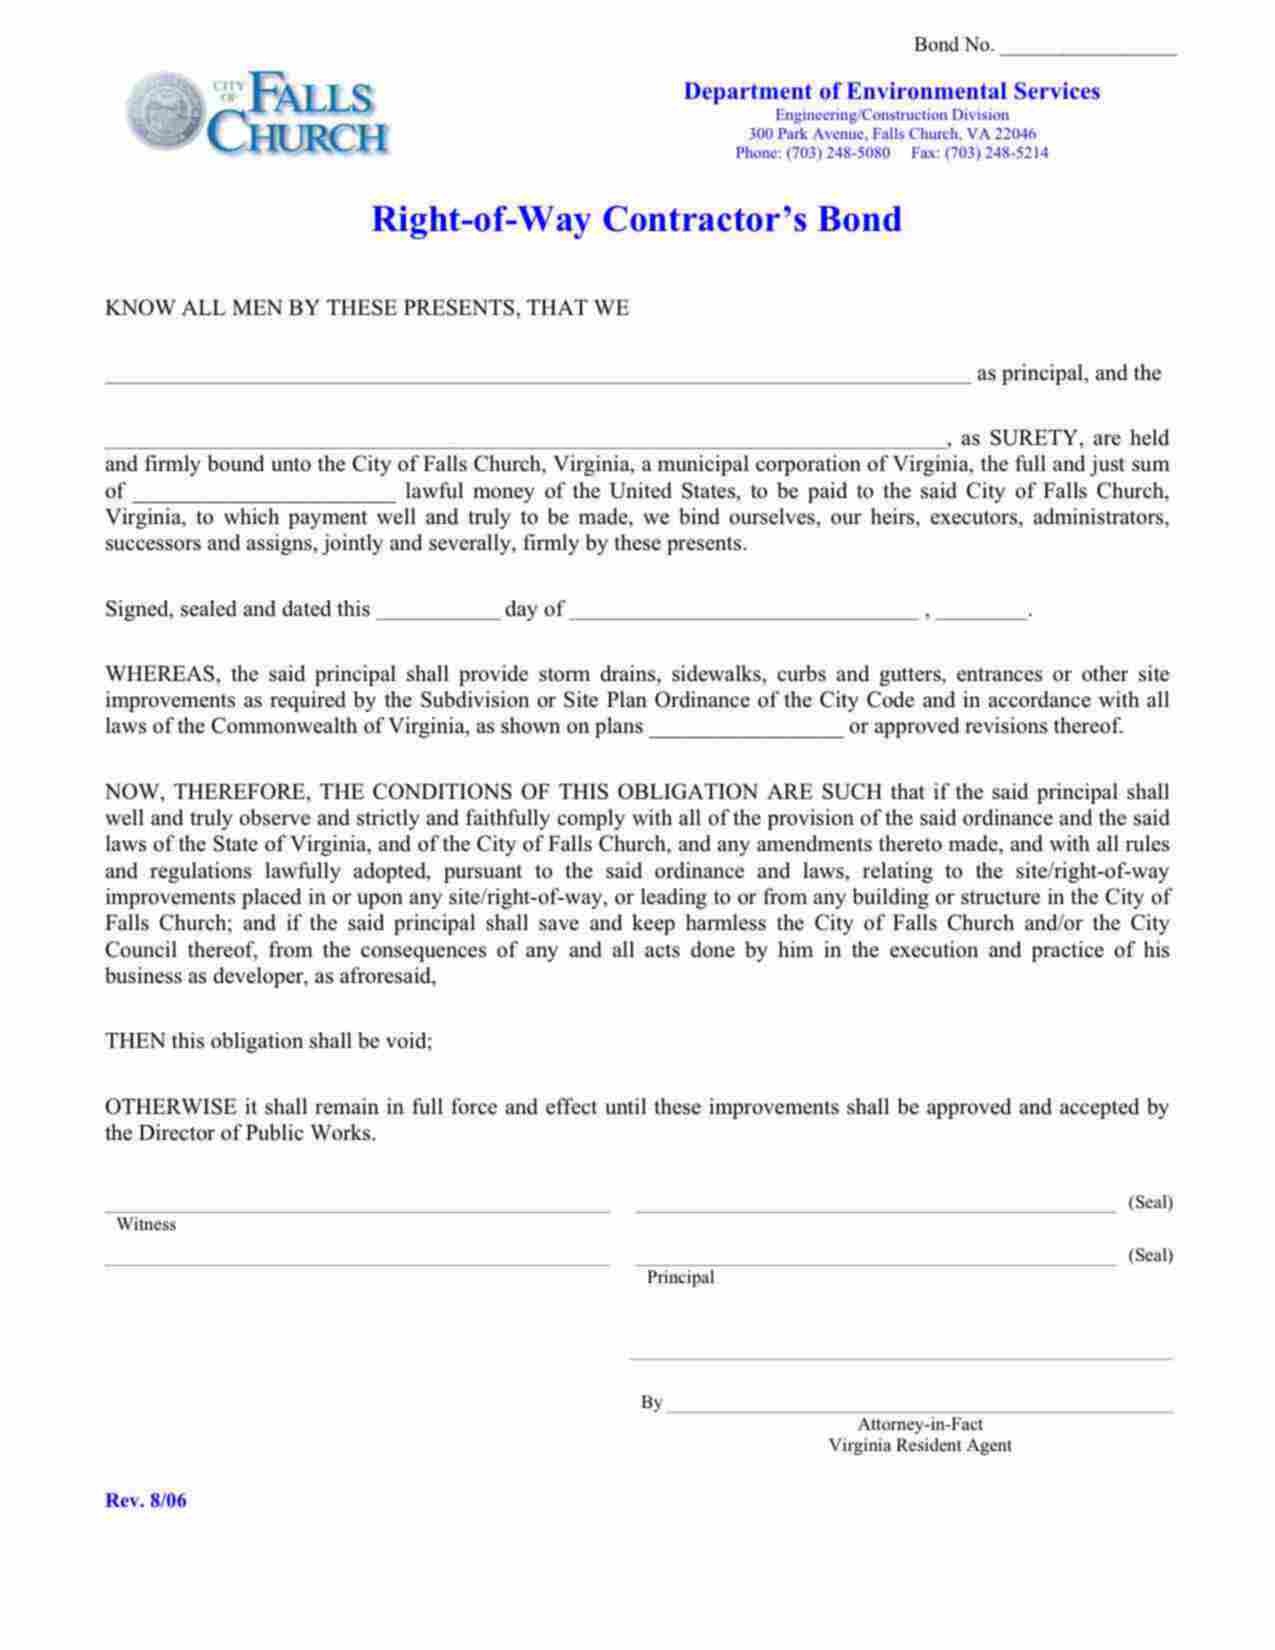 Virginia Right-of-Way Contractor Bond Form